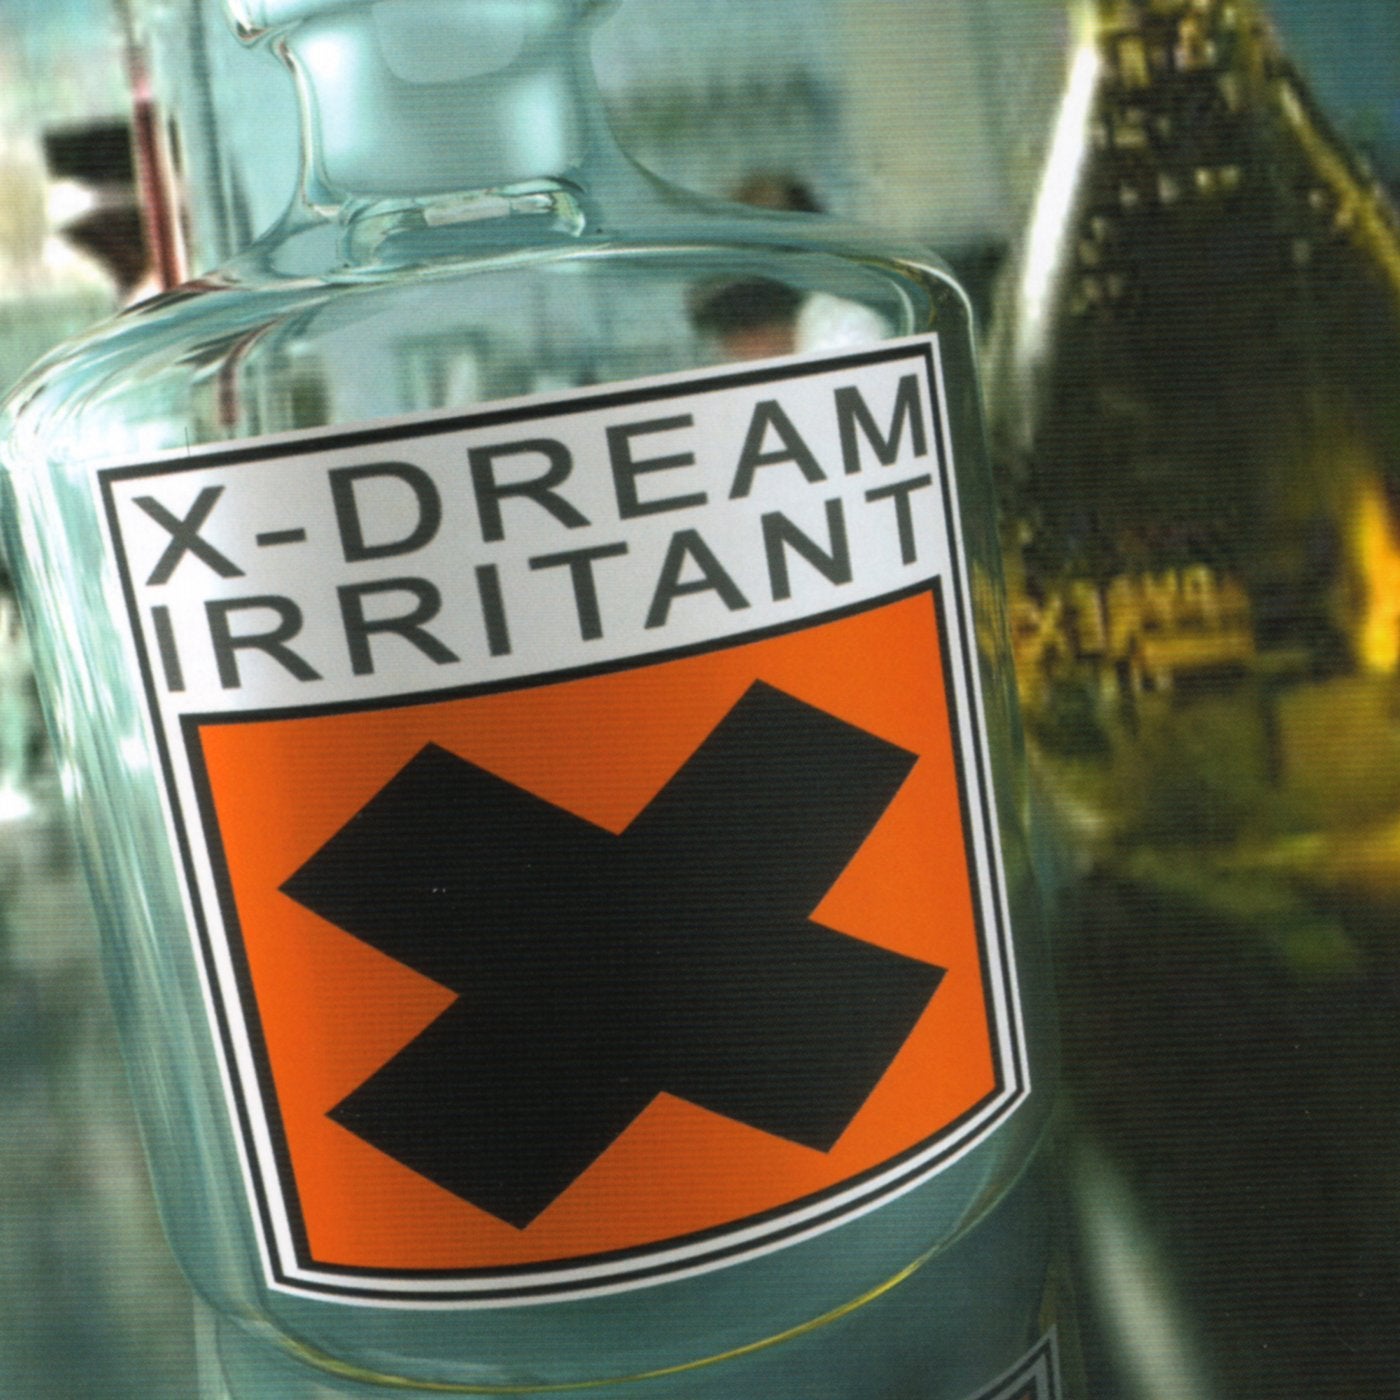 X-DREAM "Irritant"